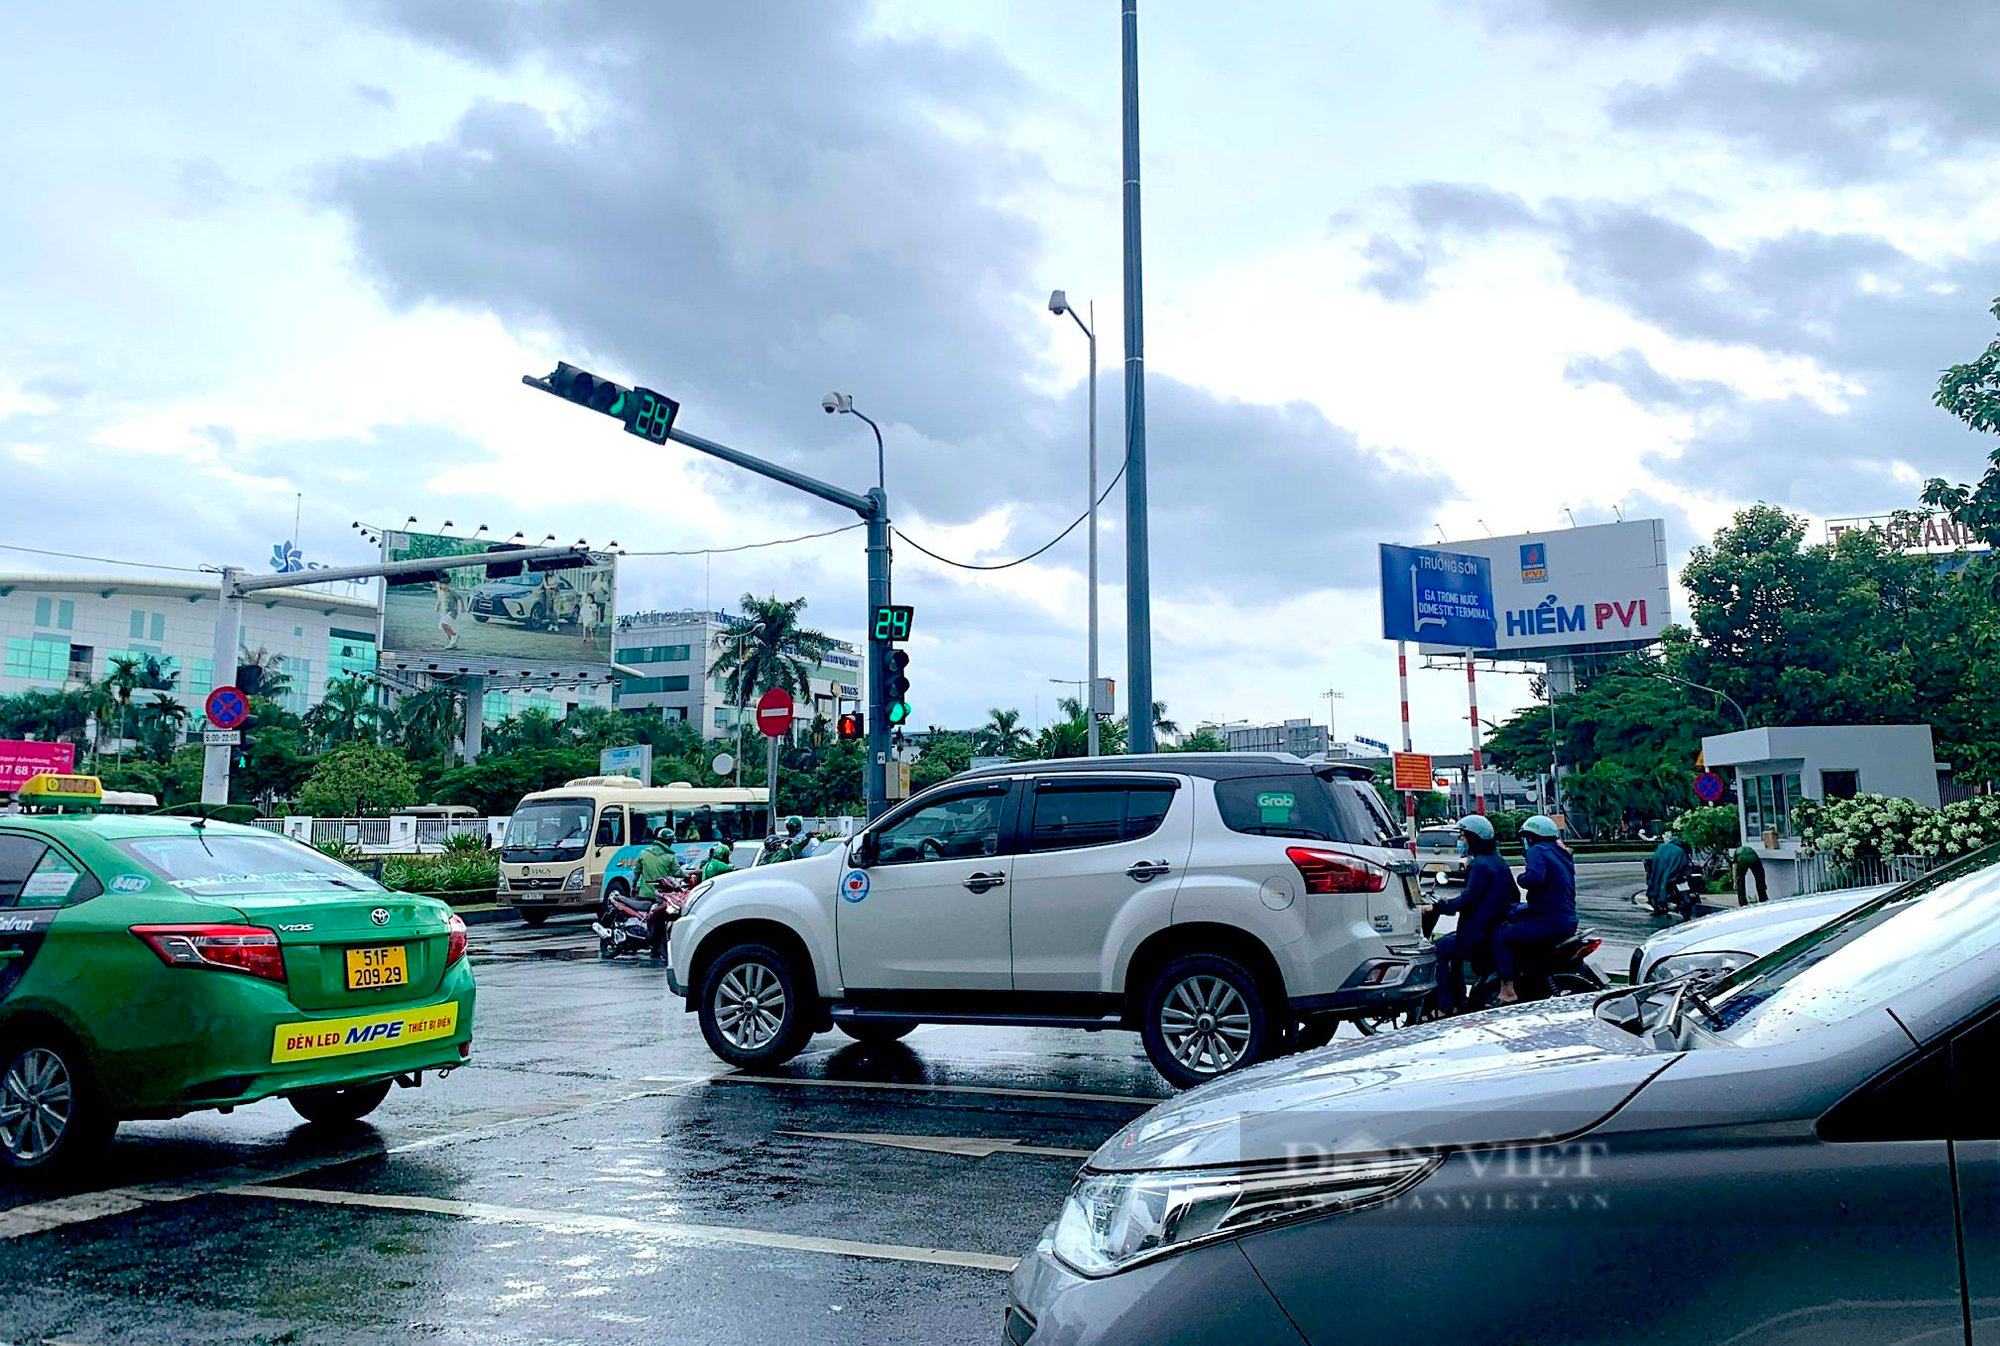 Tân Sơn Nhất hỗ trợ các hãng taxi đậu xe trên đường Hồng Hà - Ảnh 1.